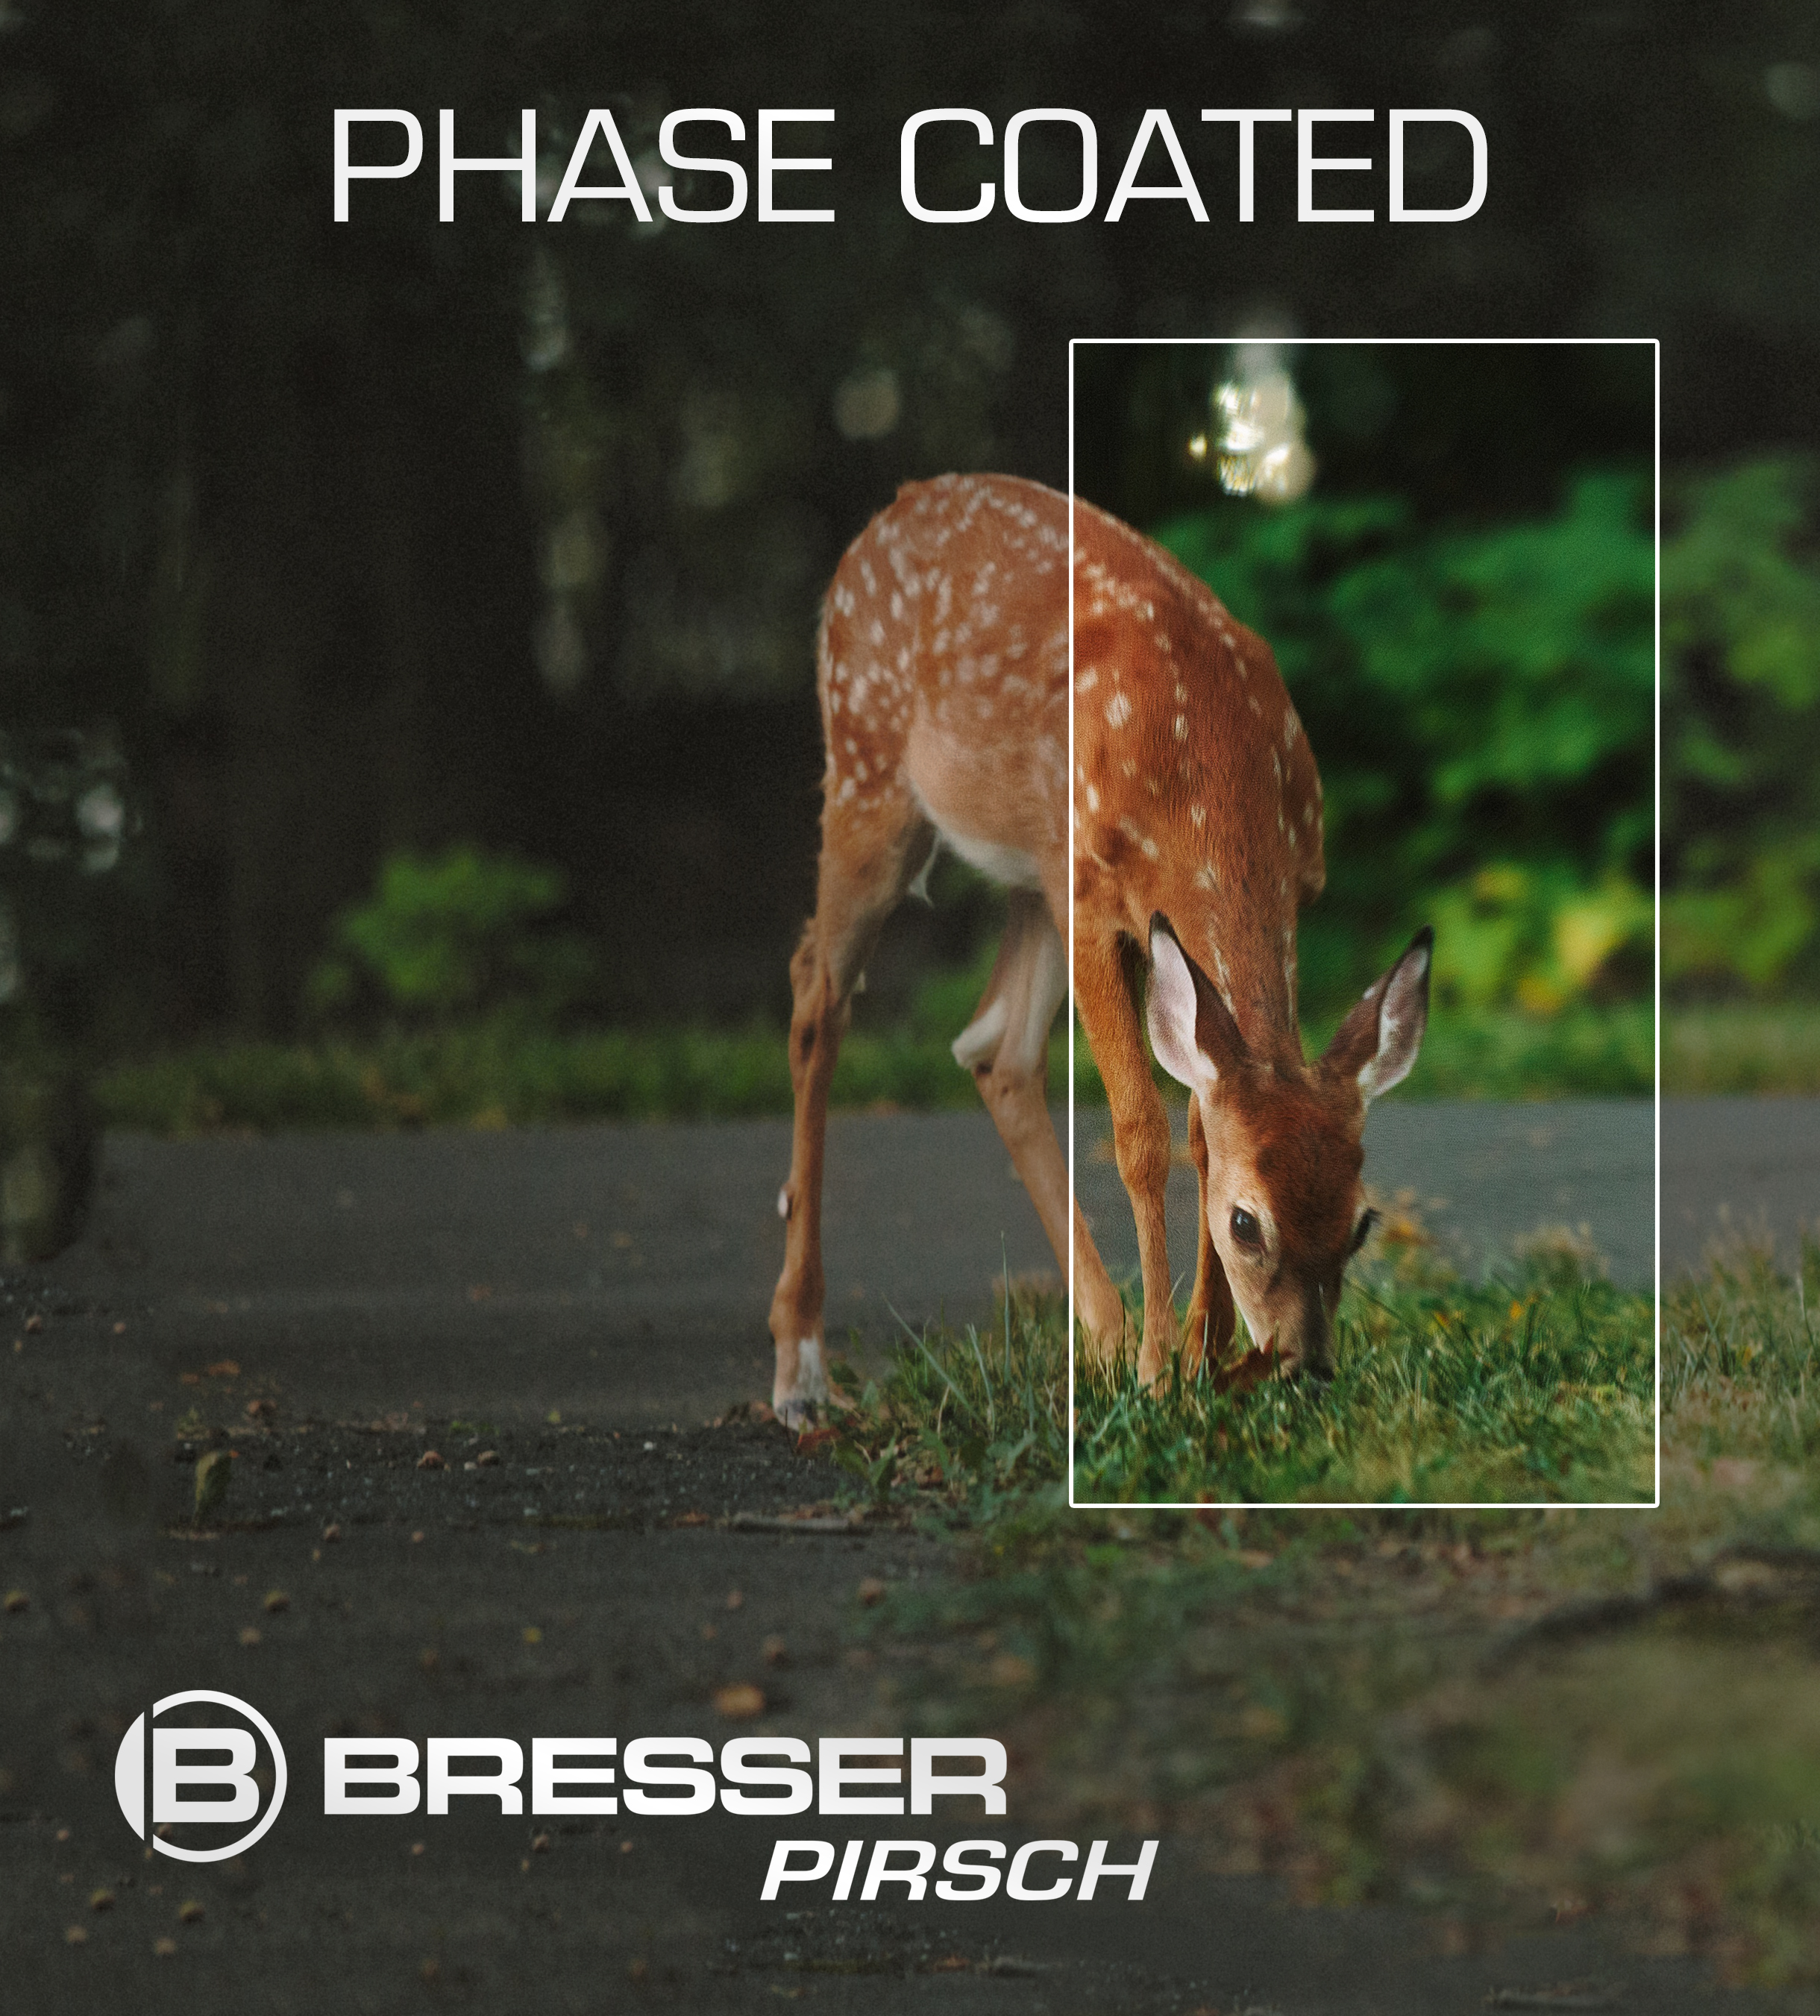 BRESSER Pirsch 10x34 mit Phasenvergütung mm, Fernglas 10, 34